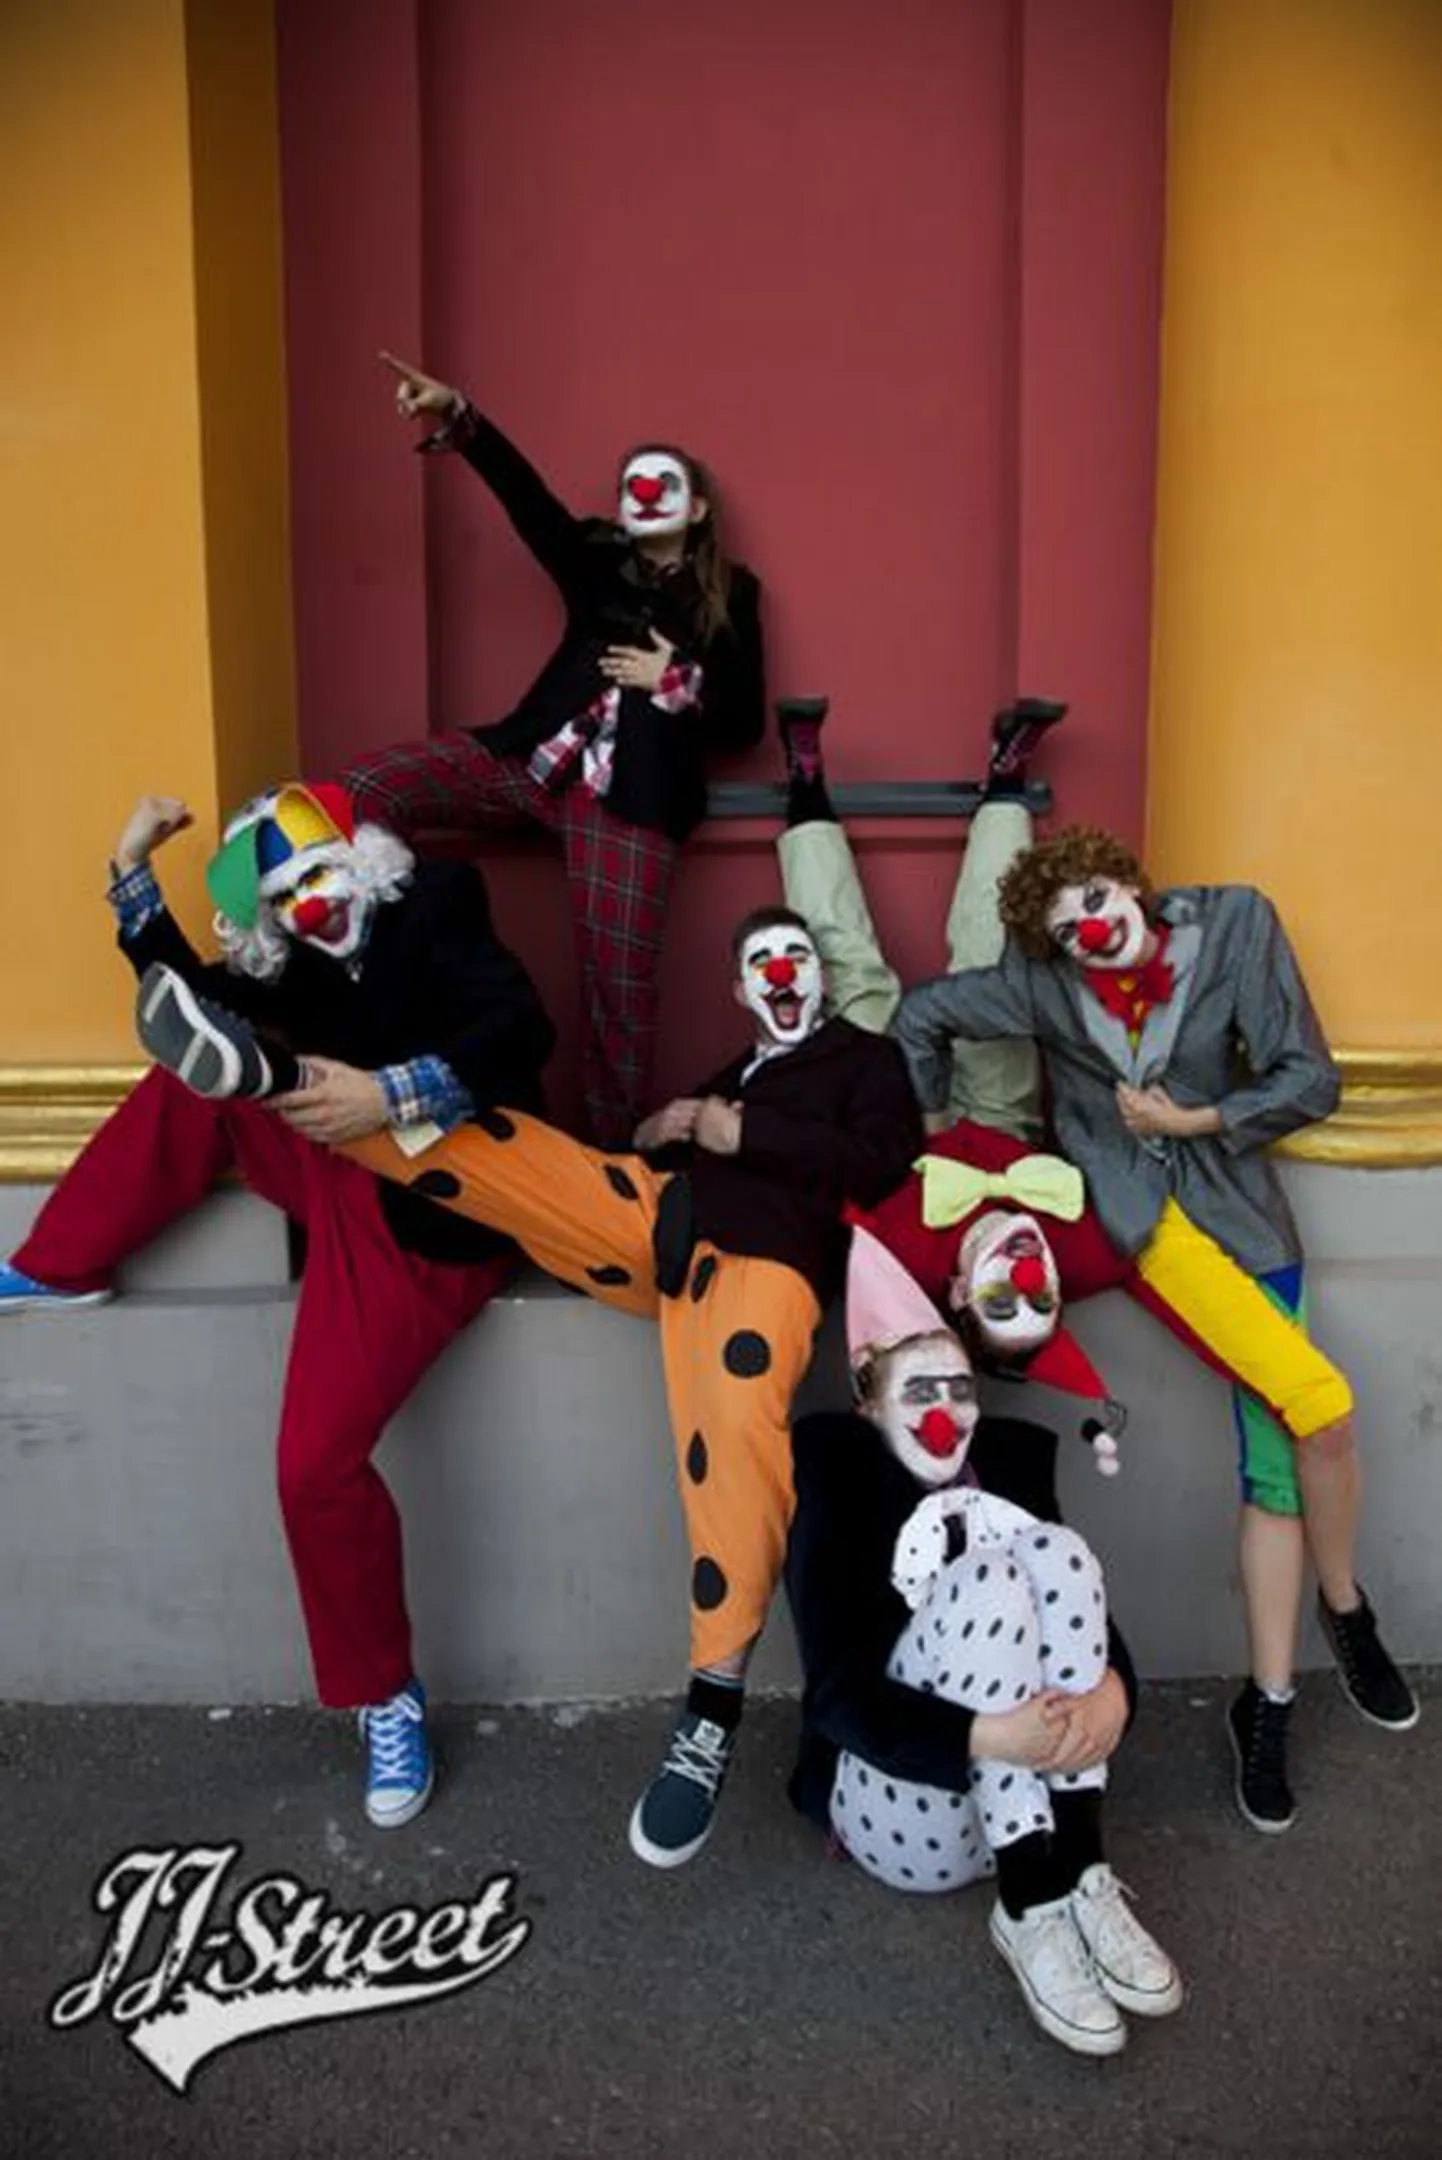 Showgruppide kategoorias jäid kohtunikele kõige rohkem silma JJ-Street Tantsukooli klounide grupp oma innovaatilisuse, põnevate kostüümide ja lõbusa olemusega.